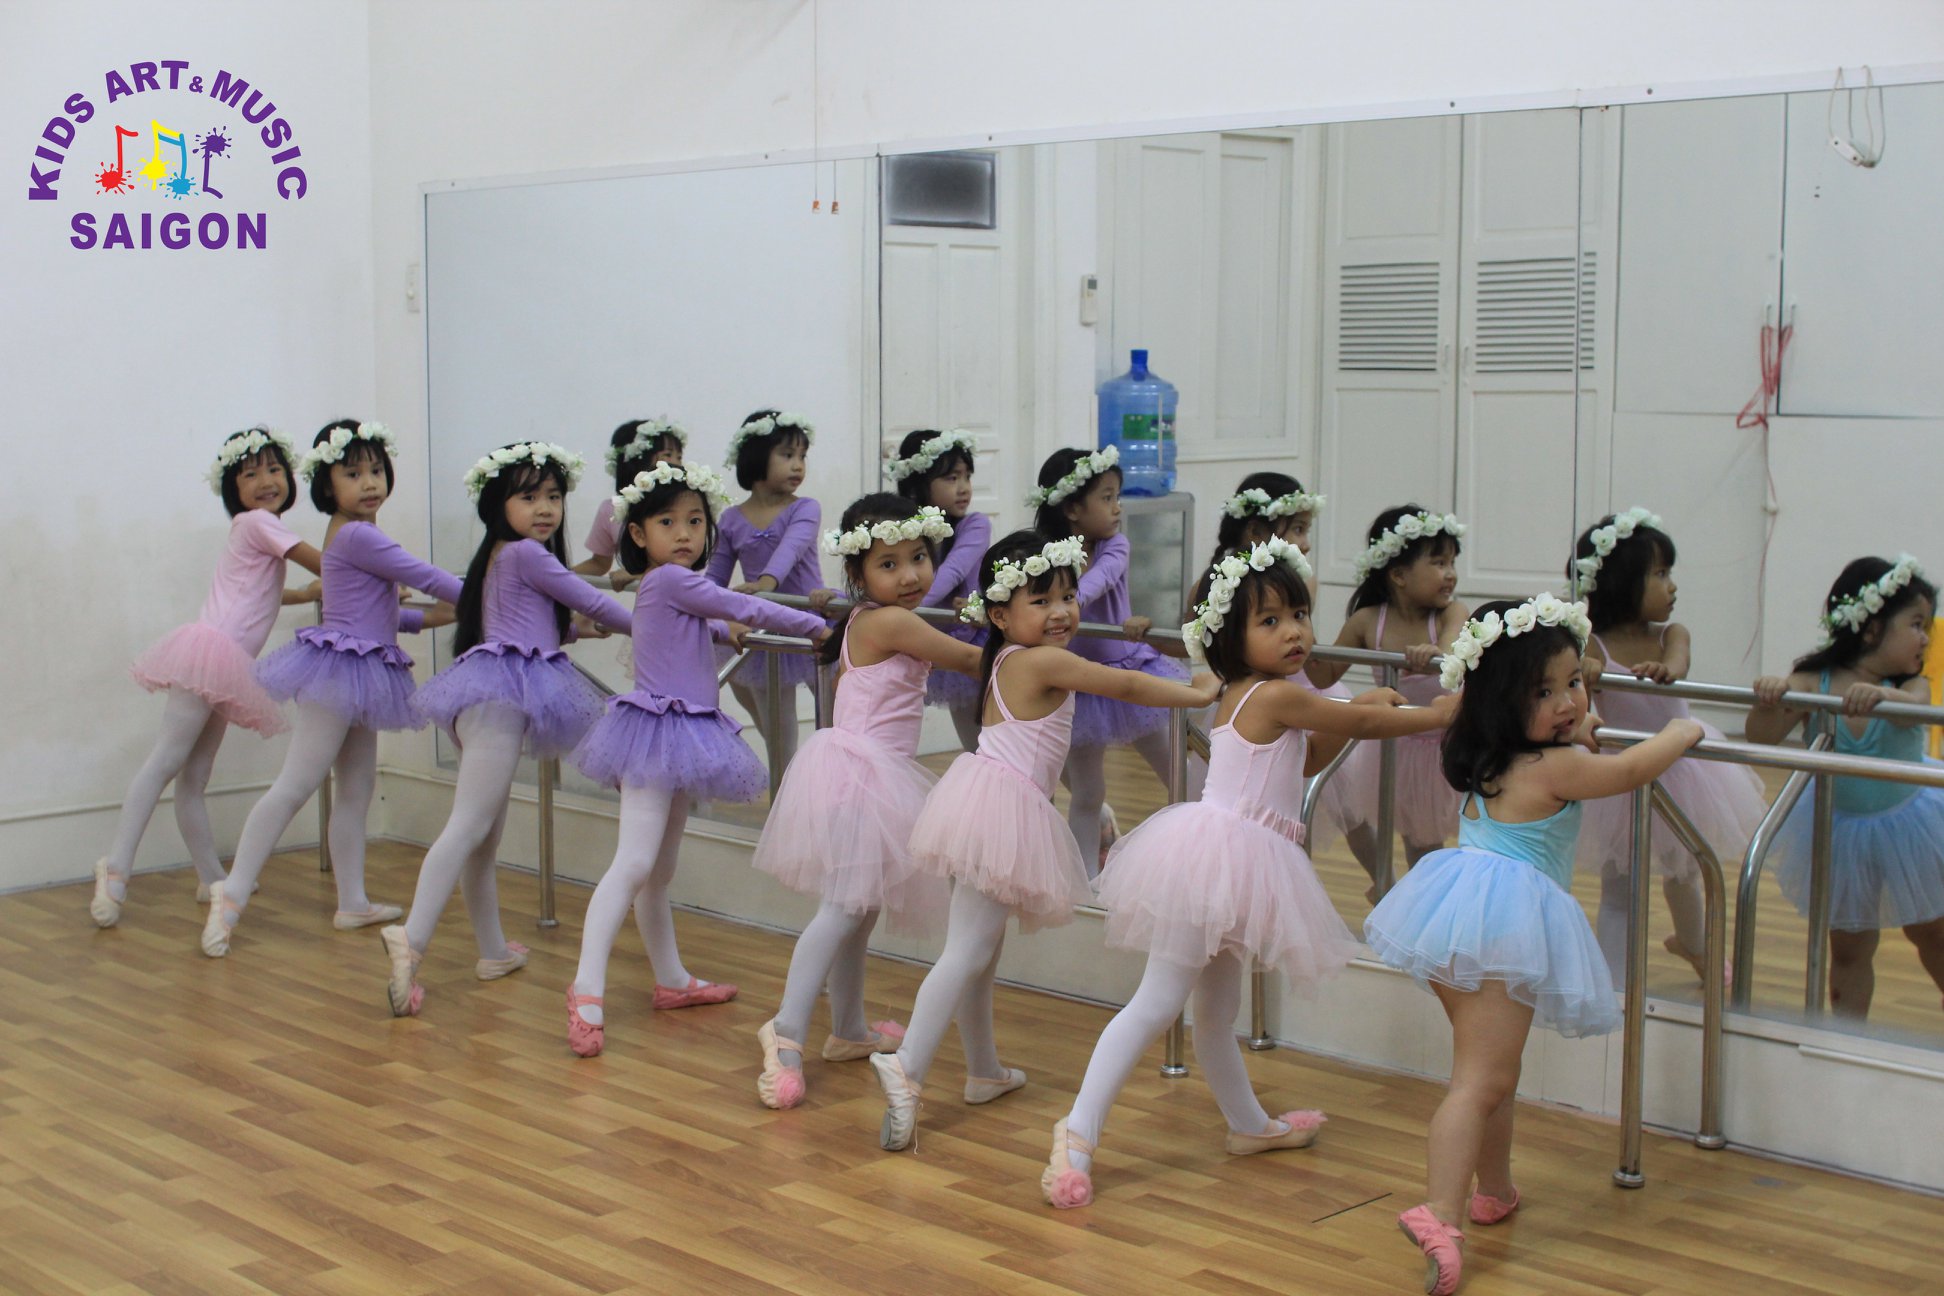 6 thế tay chân quan trọng trong múa ballet cơ bản khi học múa ở quận 9 hình ảnh 2